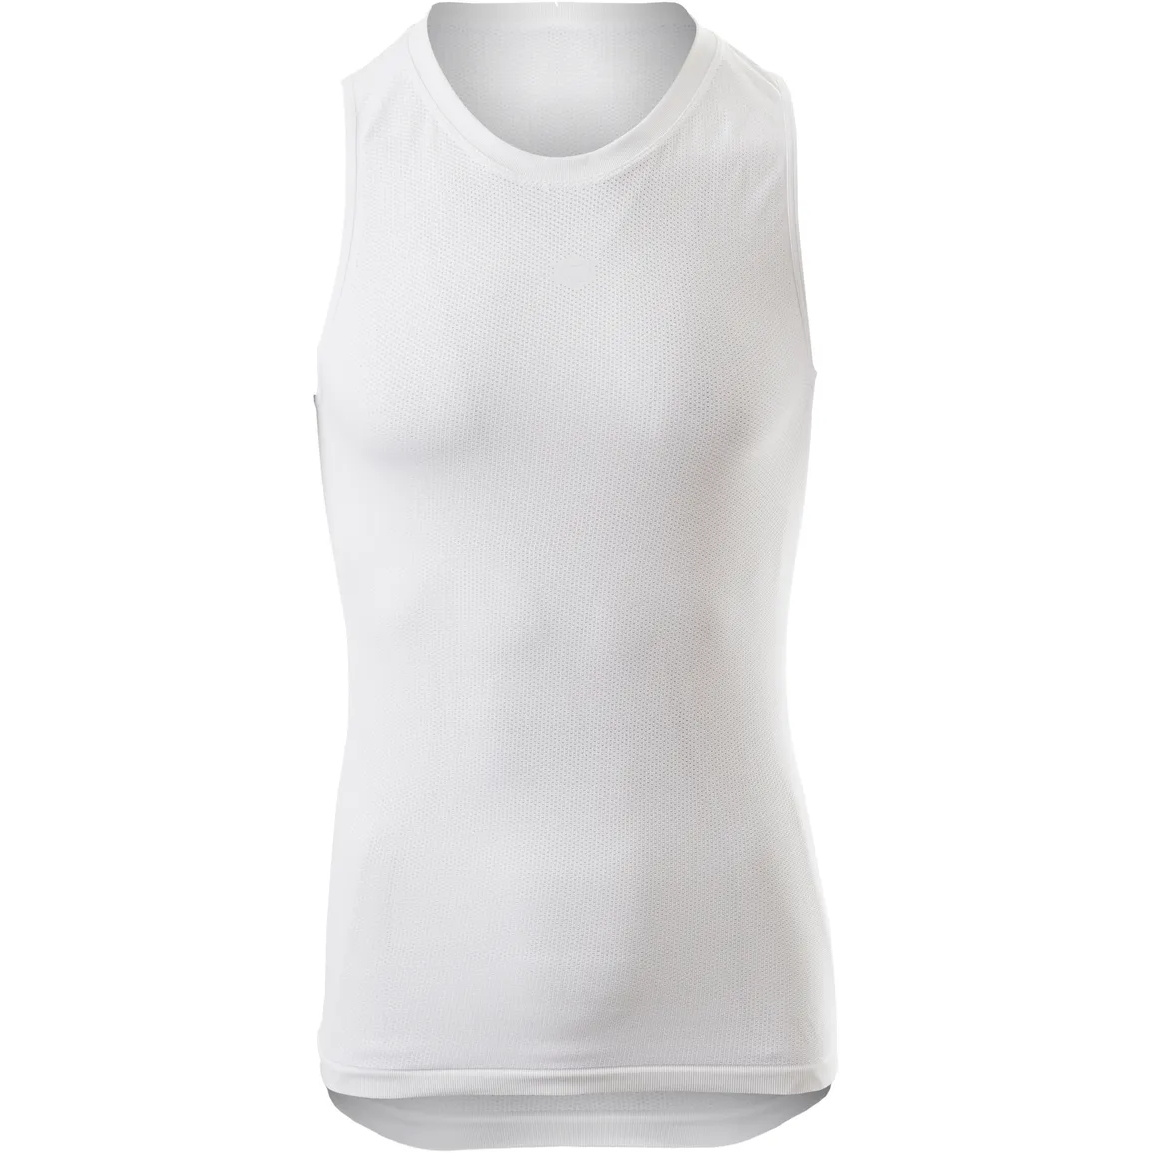 Produktbild von AGU Essential Summerday Baselayer Nahtloses Ärmelloses Unterhemd Unisex - weiß